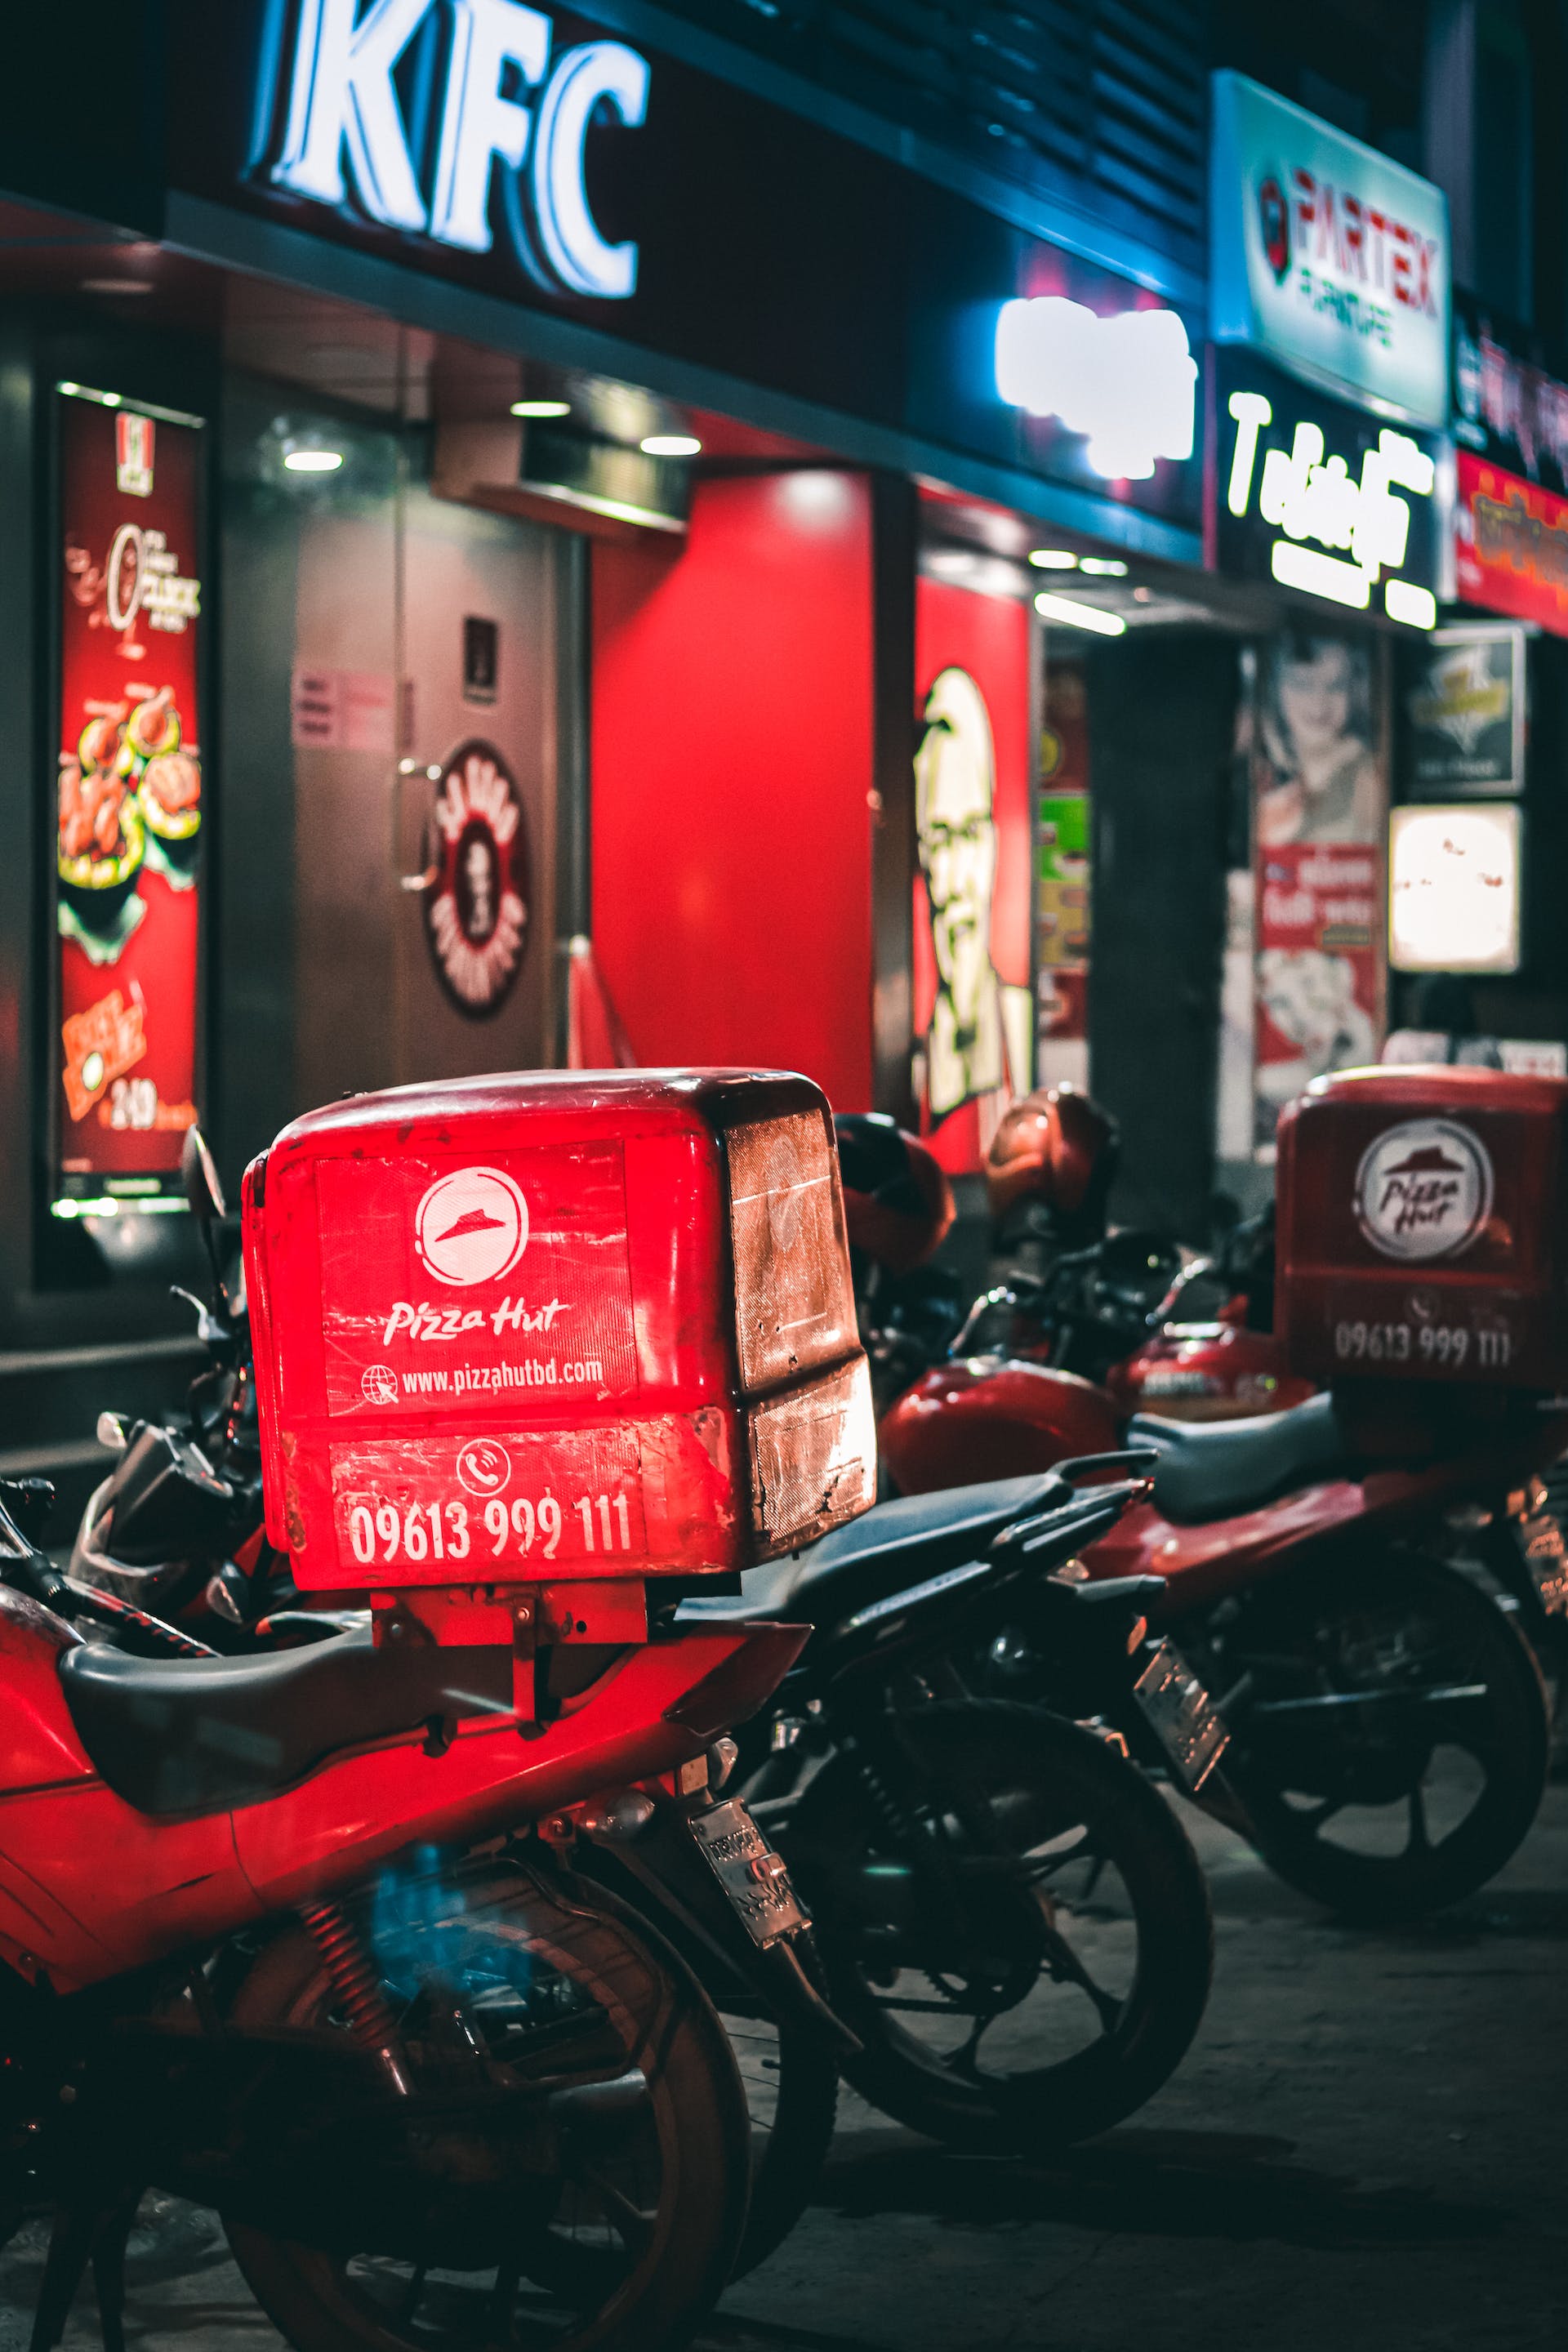 Bicicletas aparcadas fuera de restaurantes de comida rápida | Fuente: Pexels